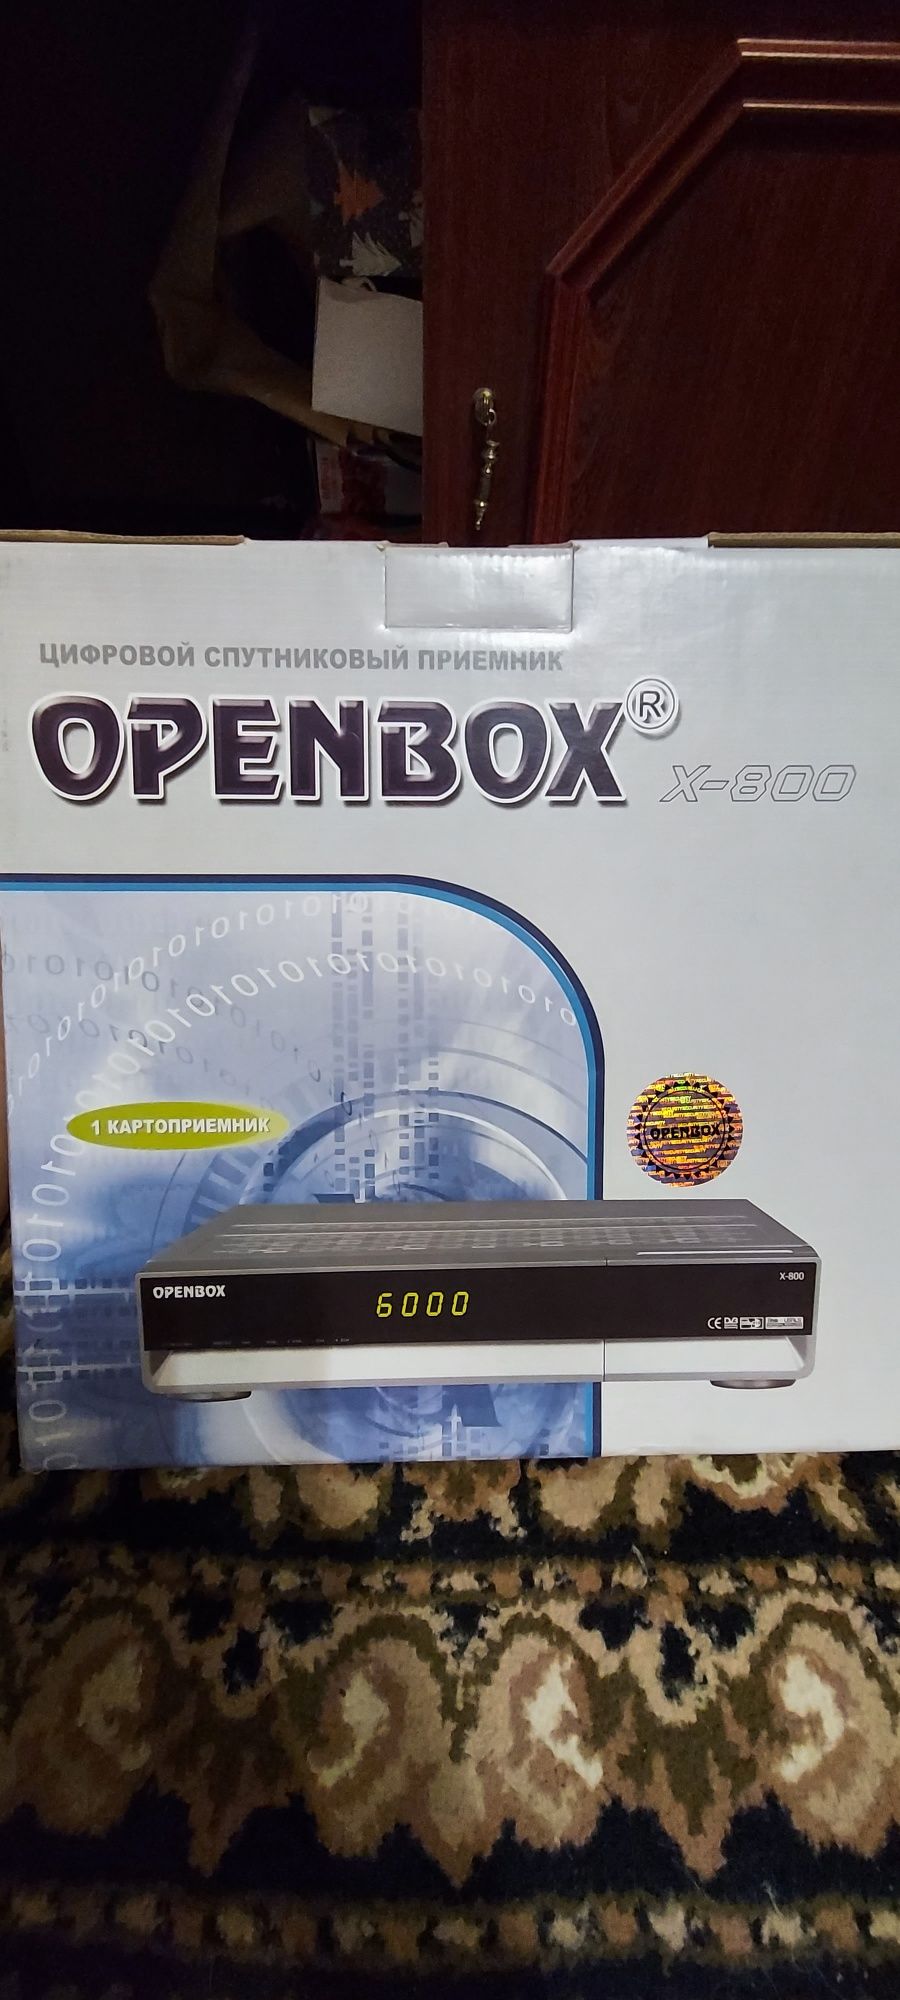 Цифровий супутниковий приймач Openbox x-800